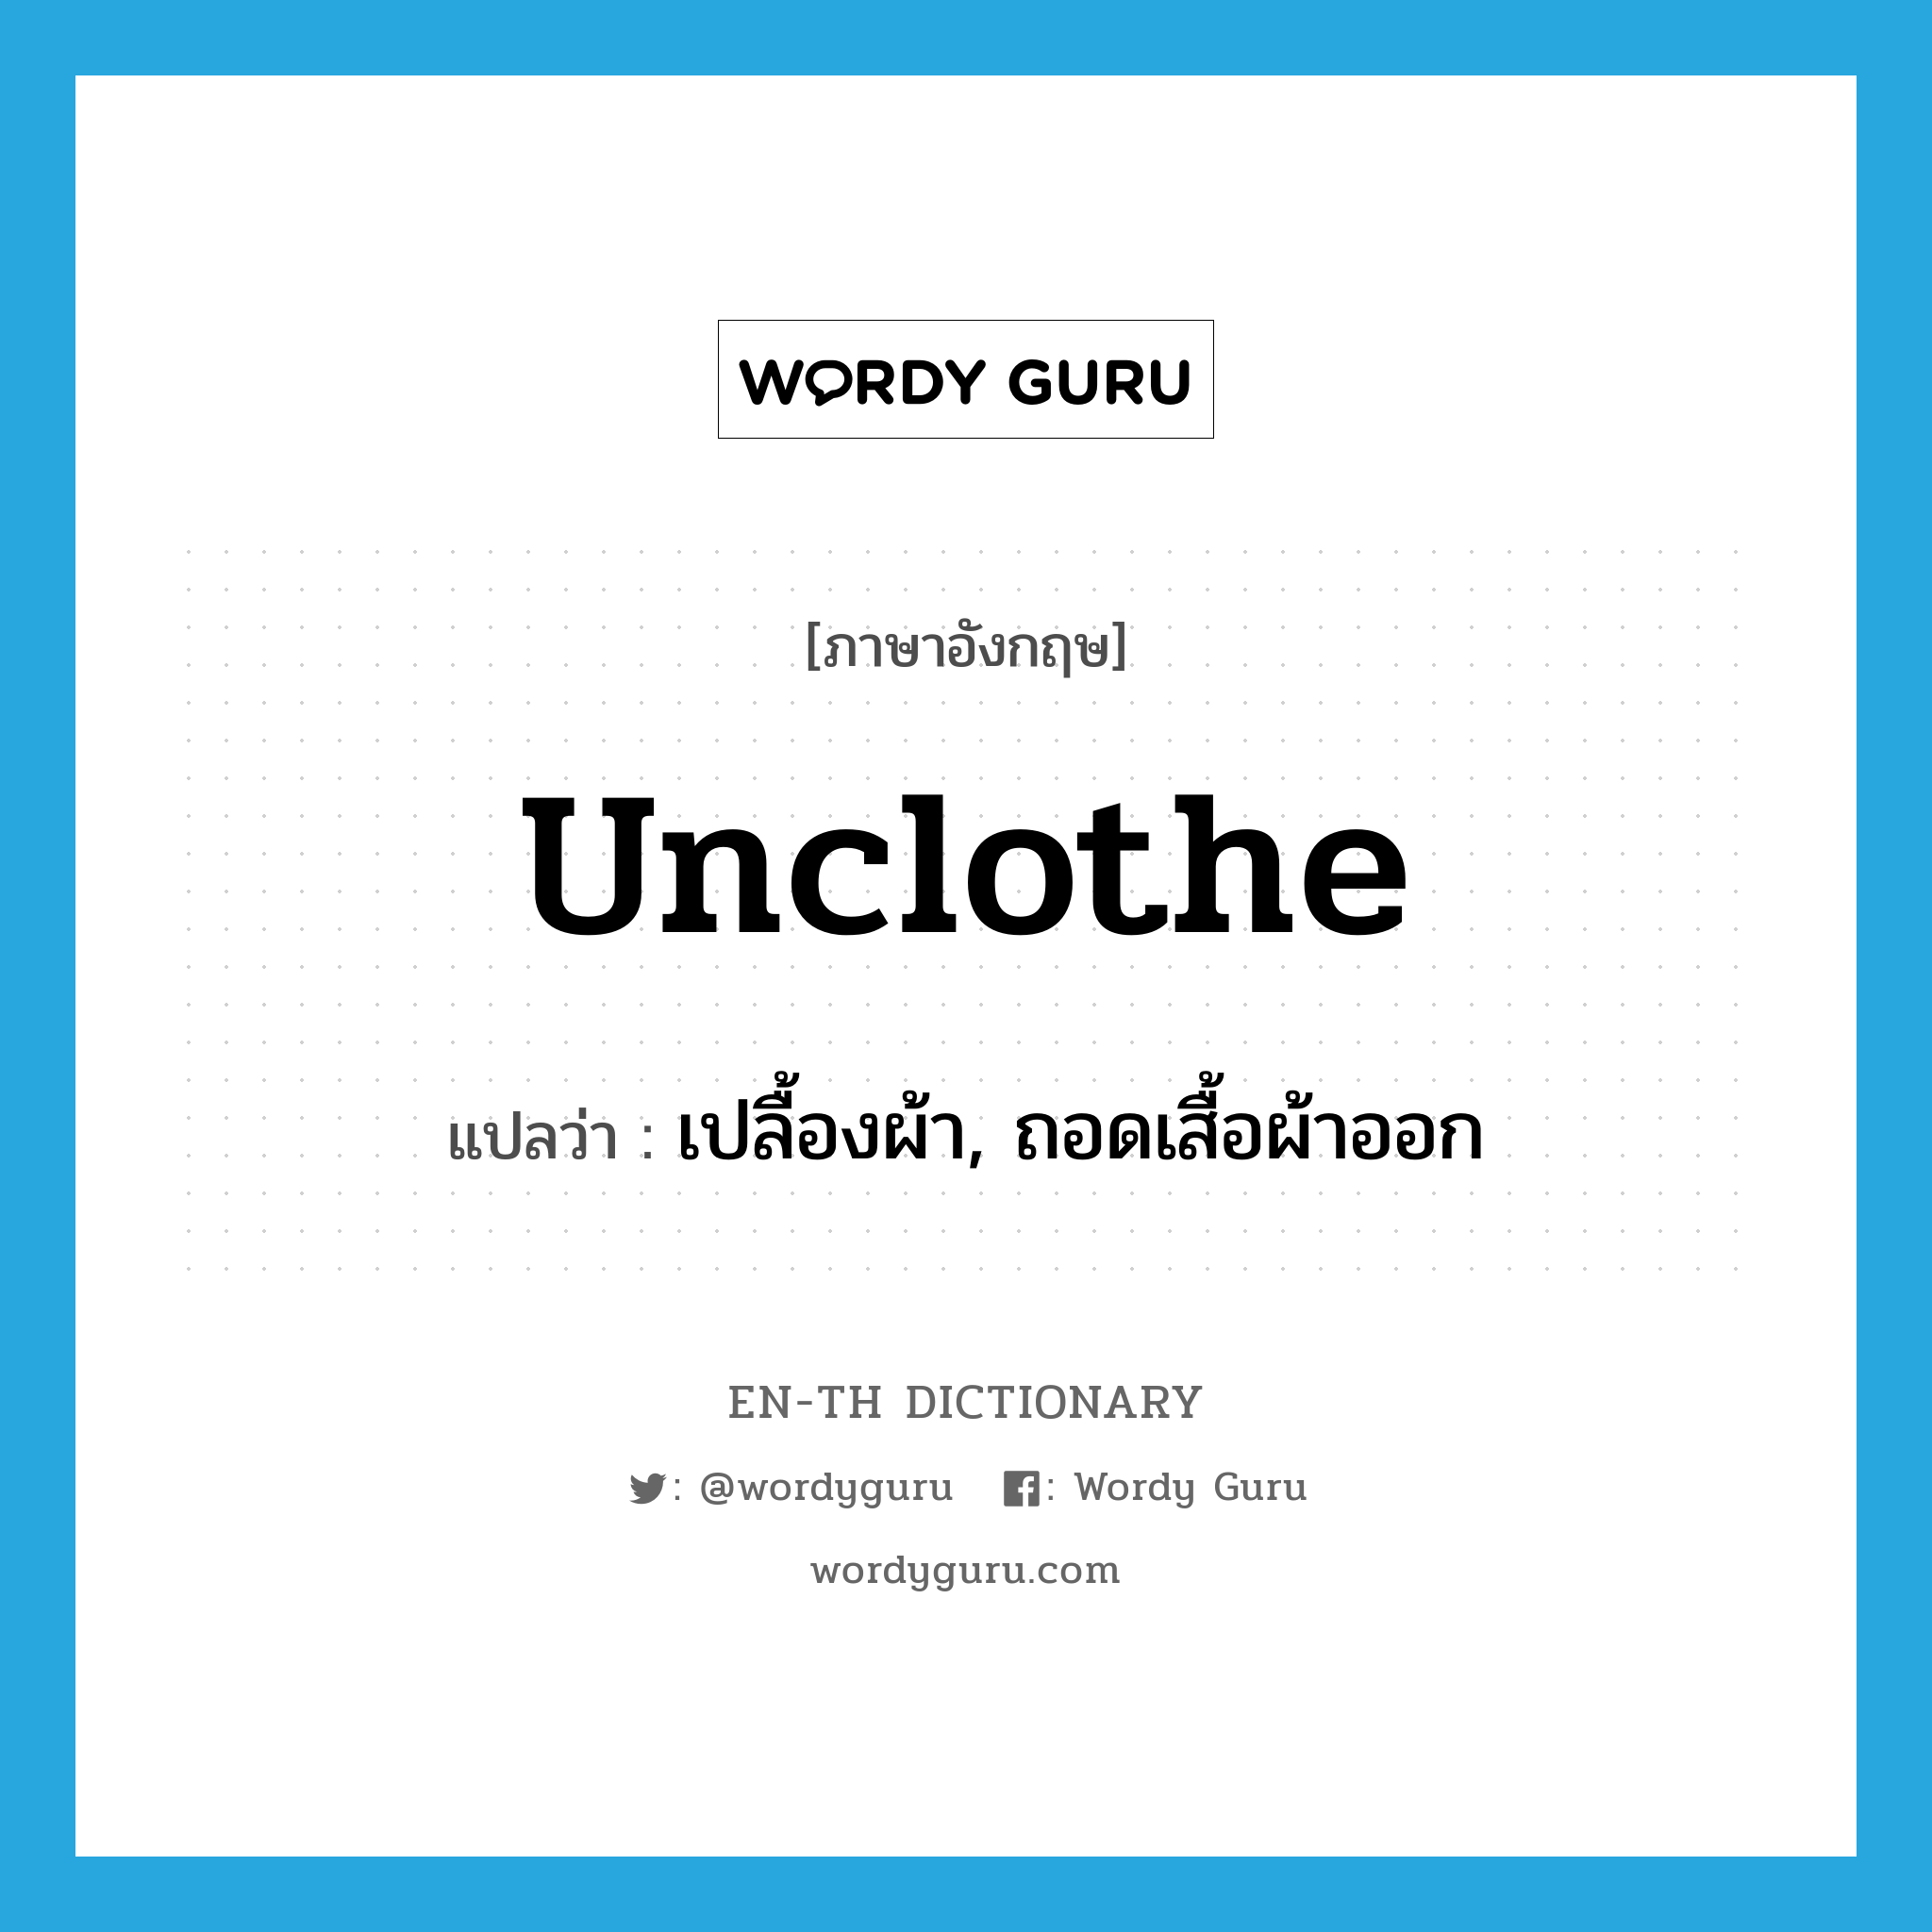 unclothe แปลว่า?, คำศัพท์ภาษาอังกฤษ unclothe แปลว่า เปลื้องผ้า, ถอดเสื้อผ้าออก ประเภท VT หมวด VT